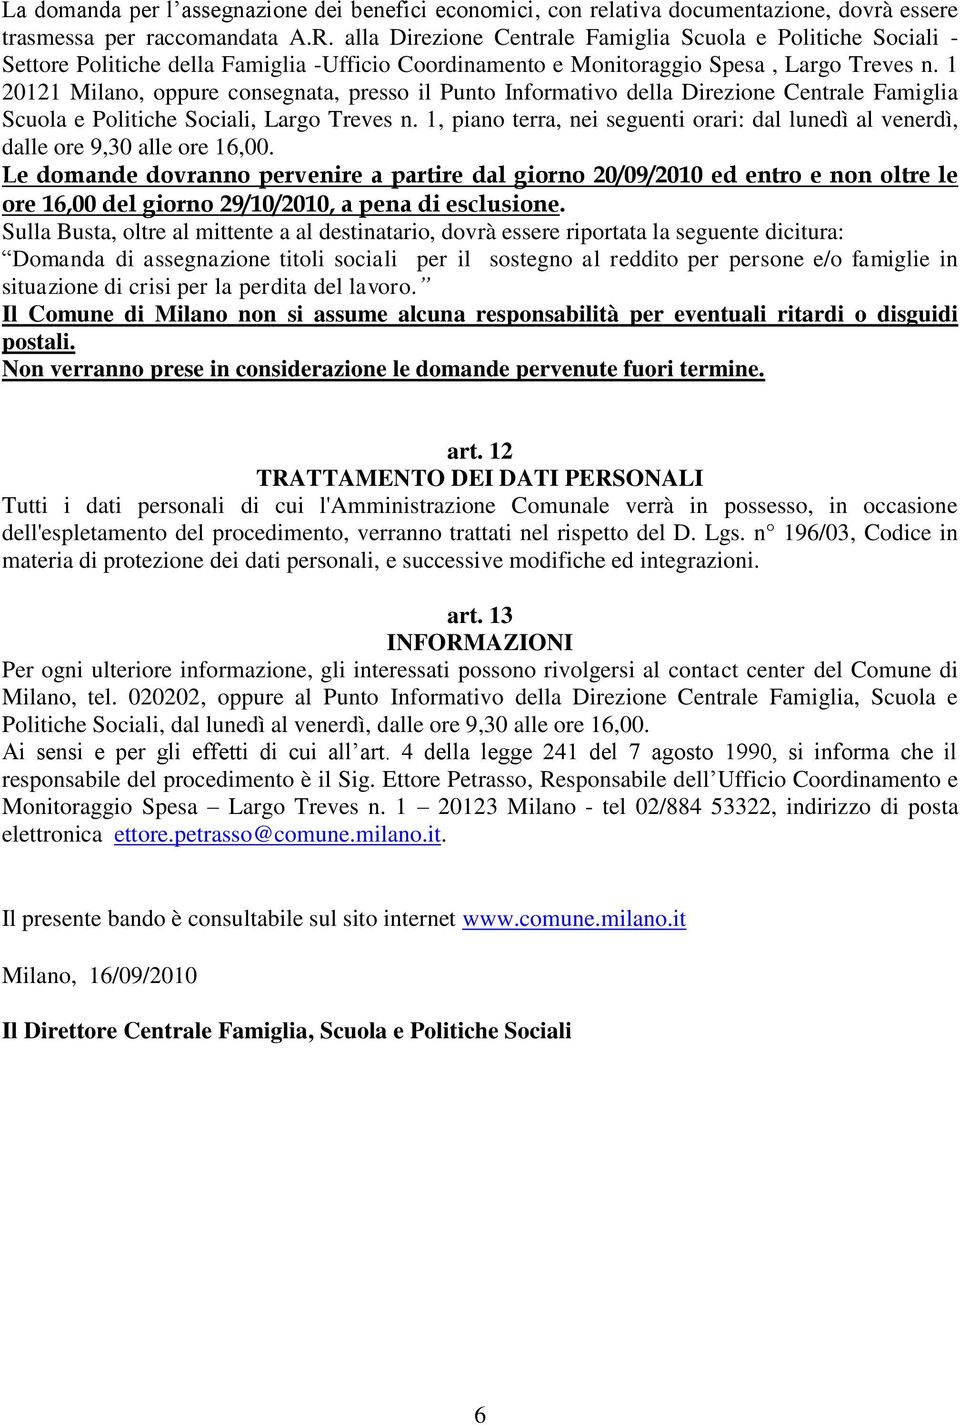 1 20121 Milano, oppure consegnata, presso il Punto Informativo della Direzione Centrale Famiglia Scuola e Politiche Sociali, Largo Treves n.